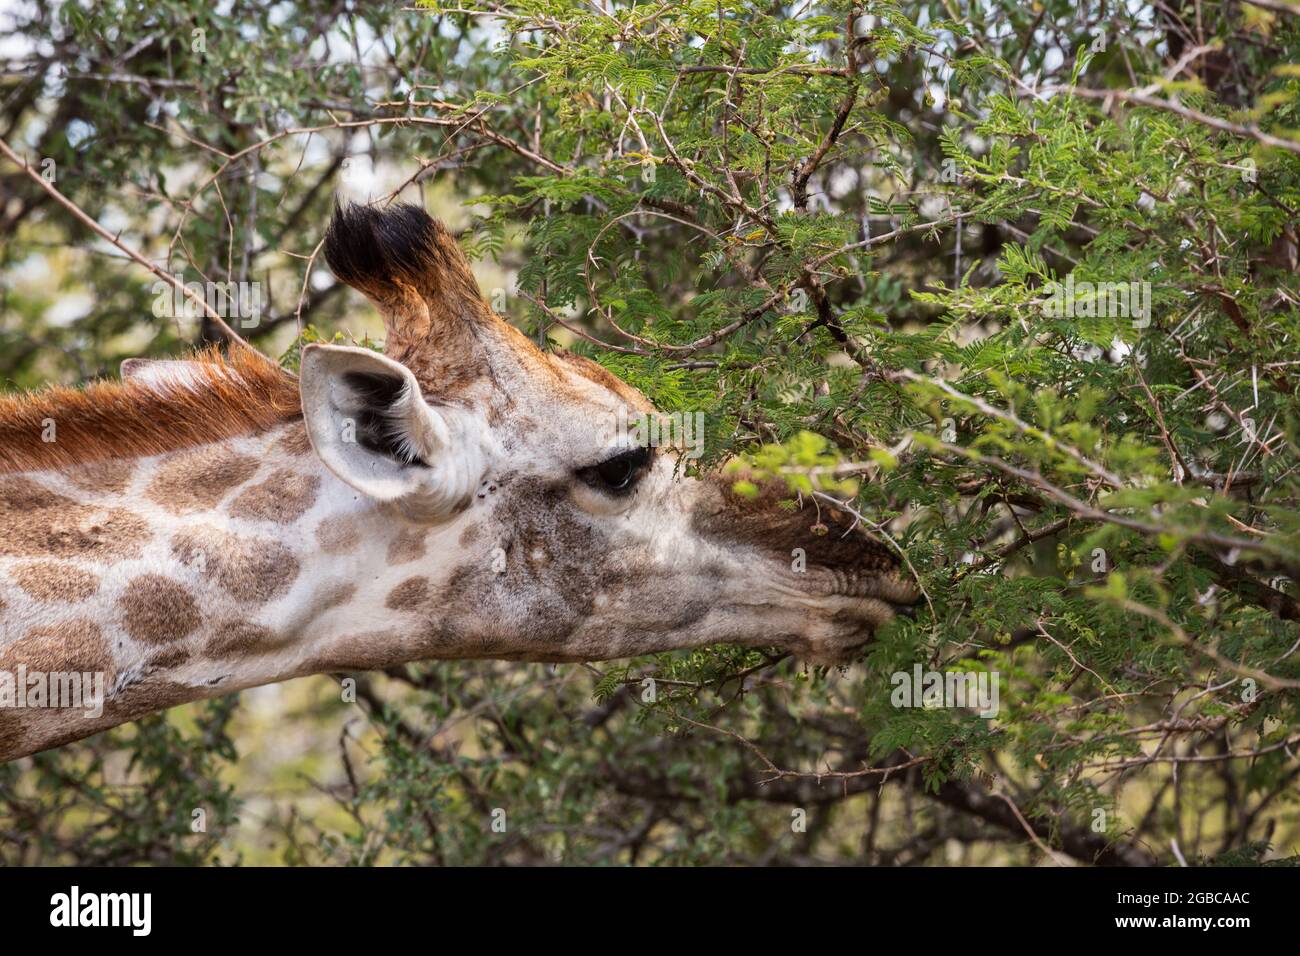 Portrait en gros plan d'une girafe femelle se nourrissant d'un acacia, le parc national Kruger. Afrique du Sud Banque D'Images